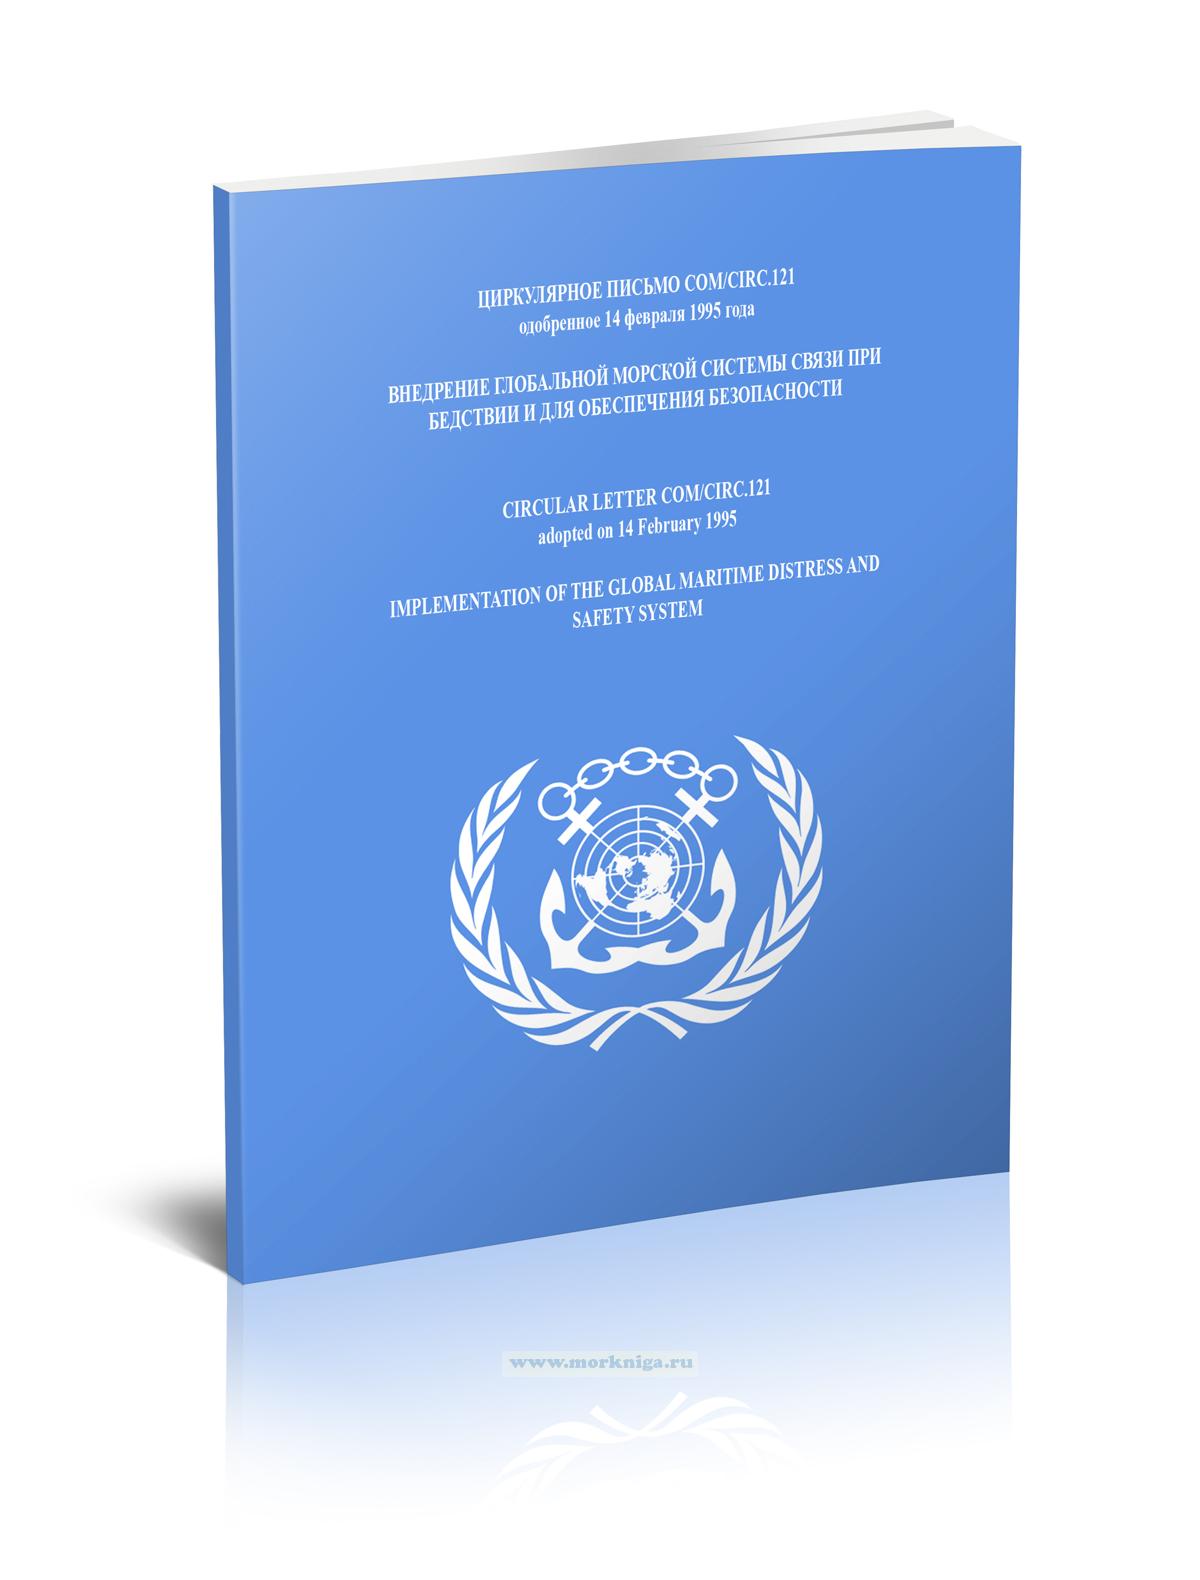 Циркулярное письмо COM/Circ.121 Внедрение Глобальной морской системы связи при бедствии и для обеспечения безопасности